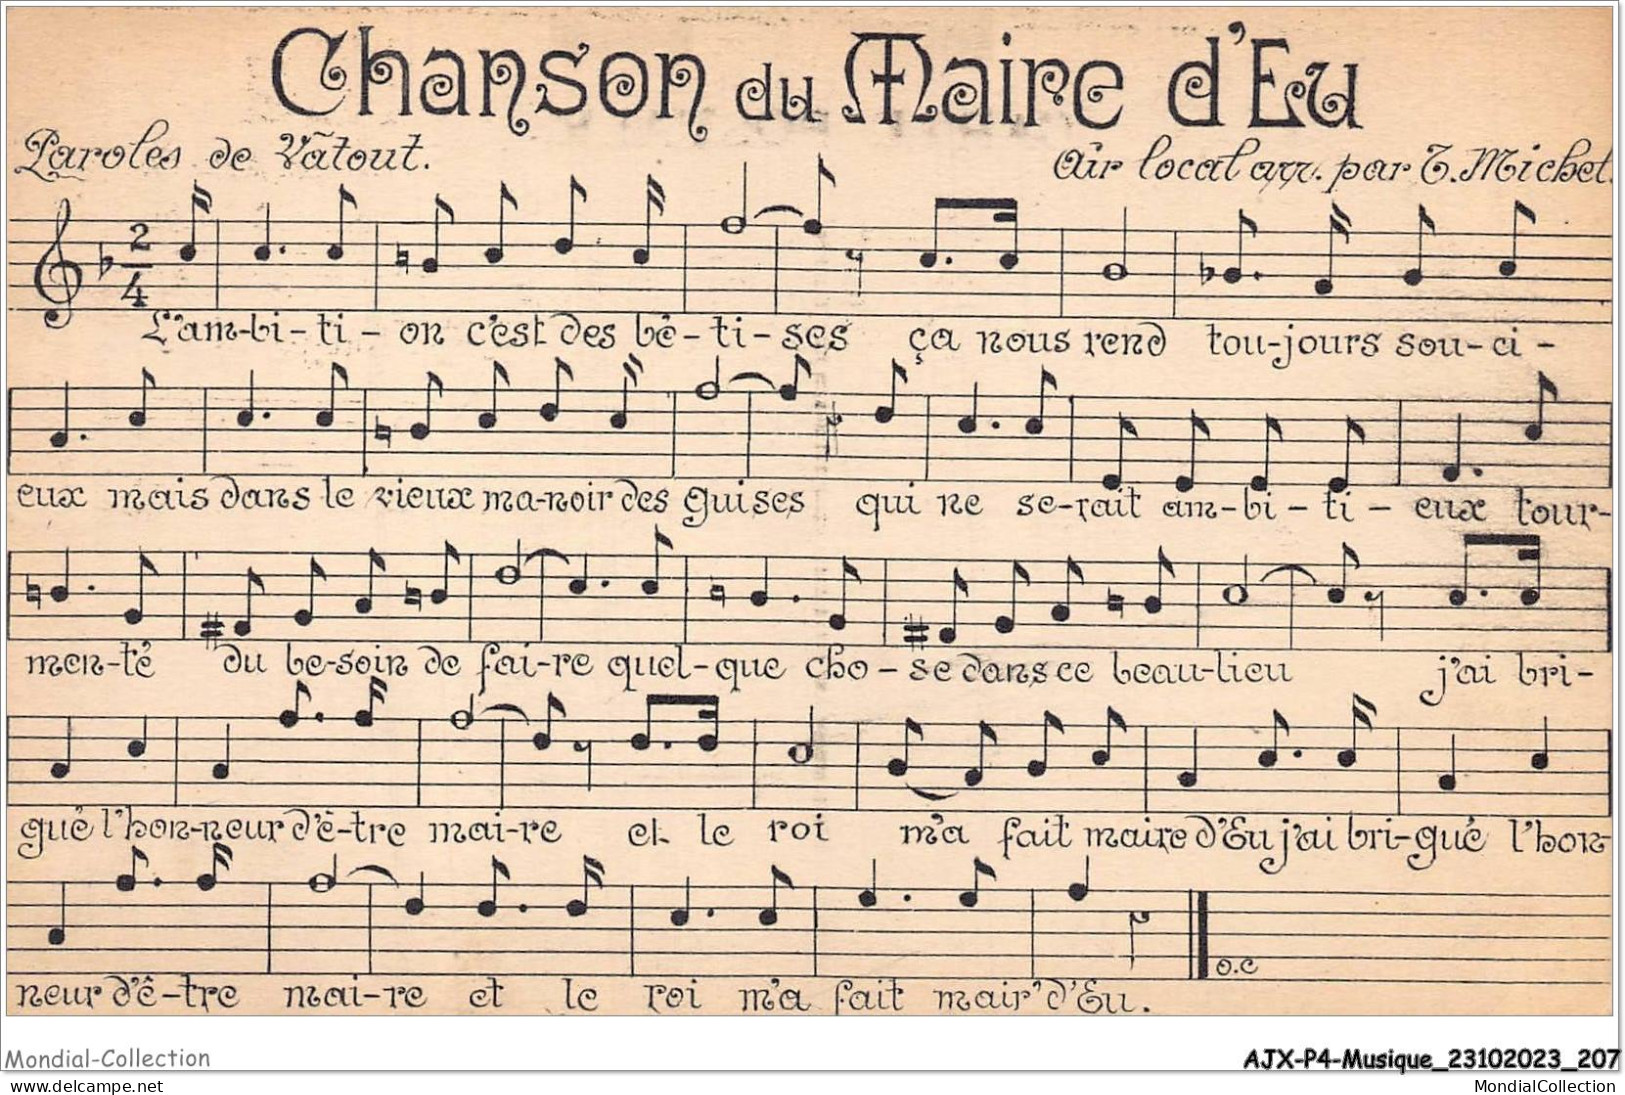 AJXP4-0443 - MUSIQUE - CHANSON DU MAIRE D'EU - Muziek En Musicus